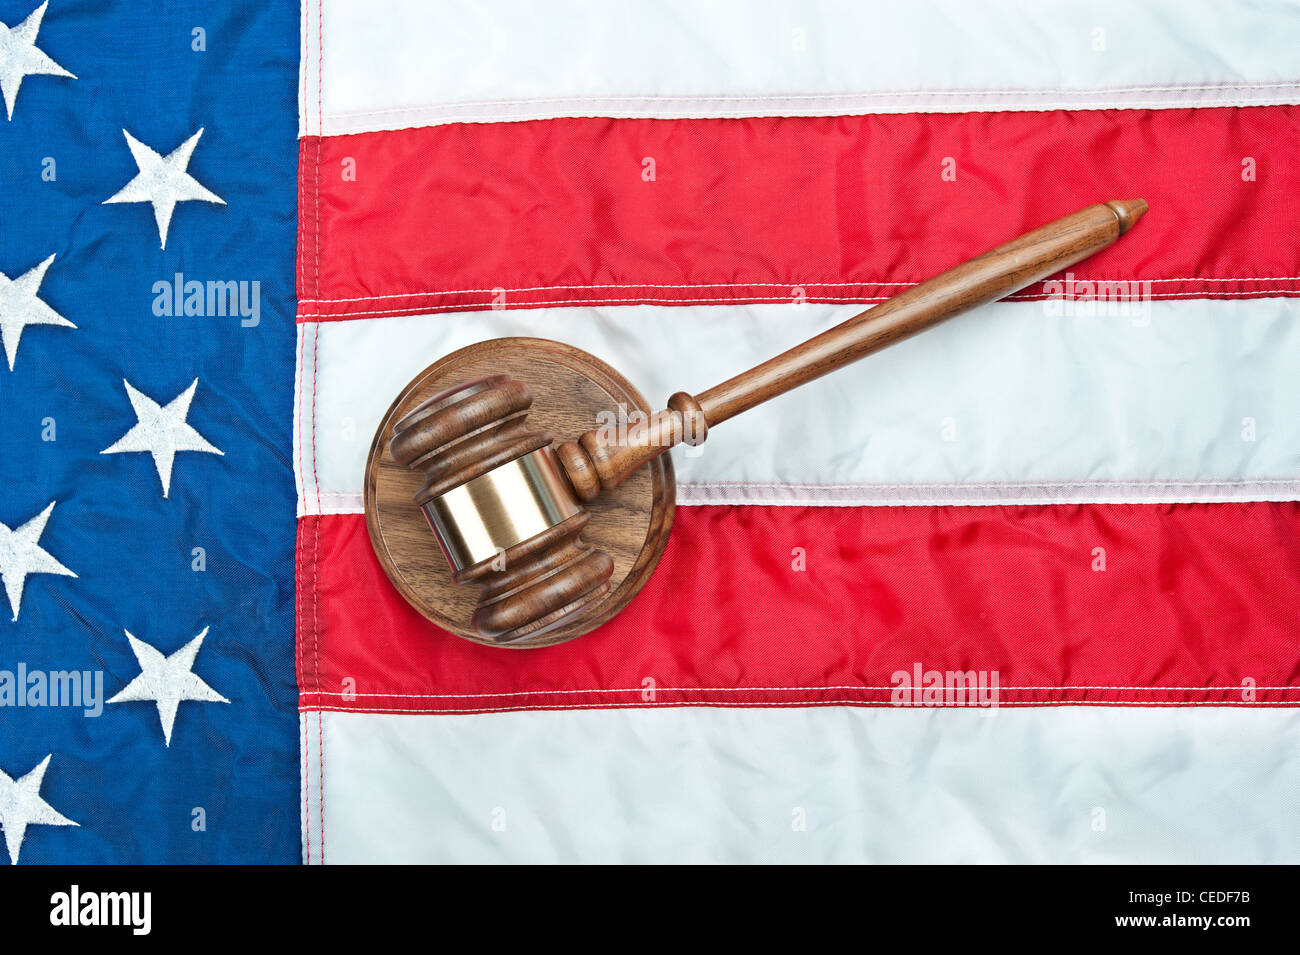 Un marteau et sound block sur un drapeau américain représentant le système juridique et l'inférence d'une loi aux Etats-Unis Banque D'Images